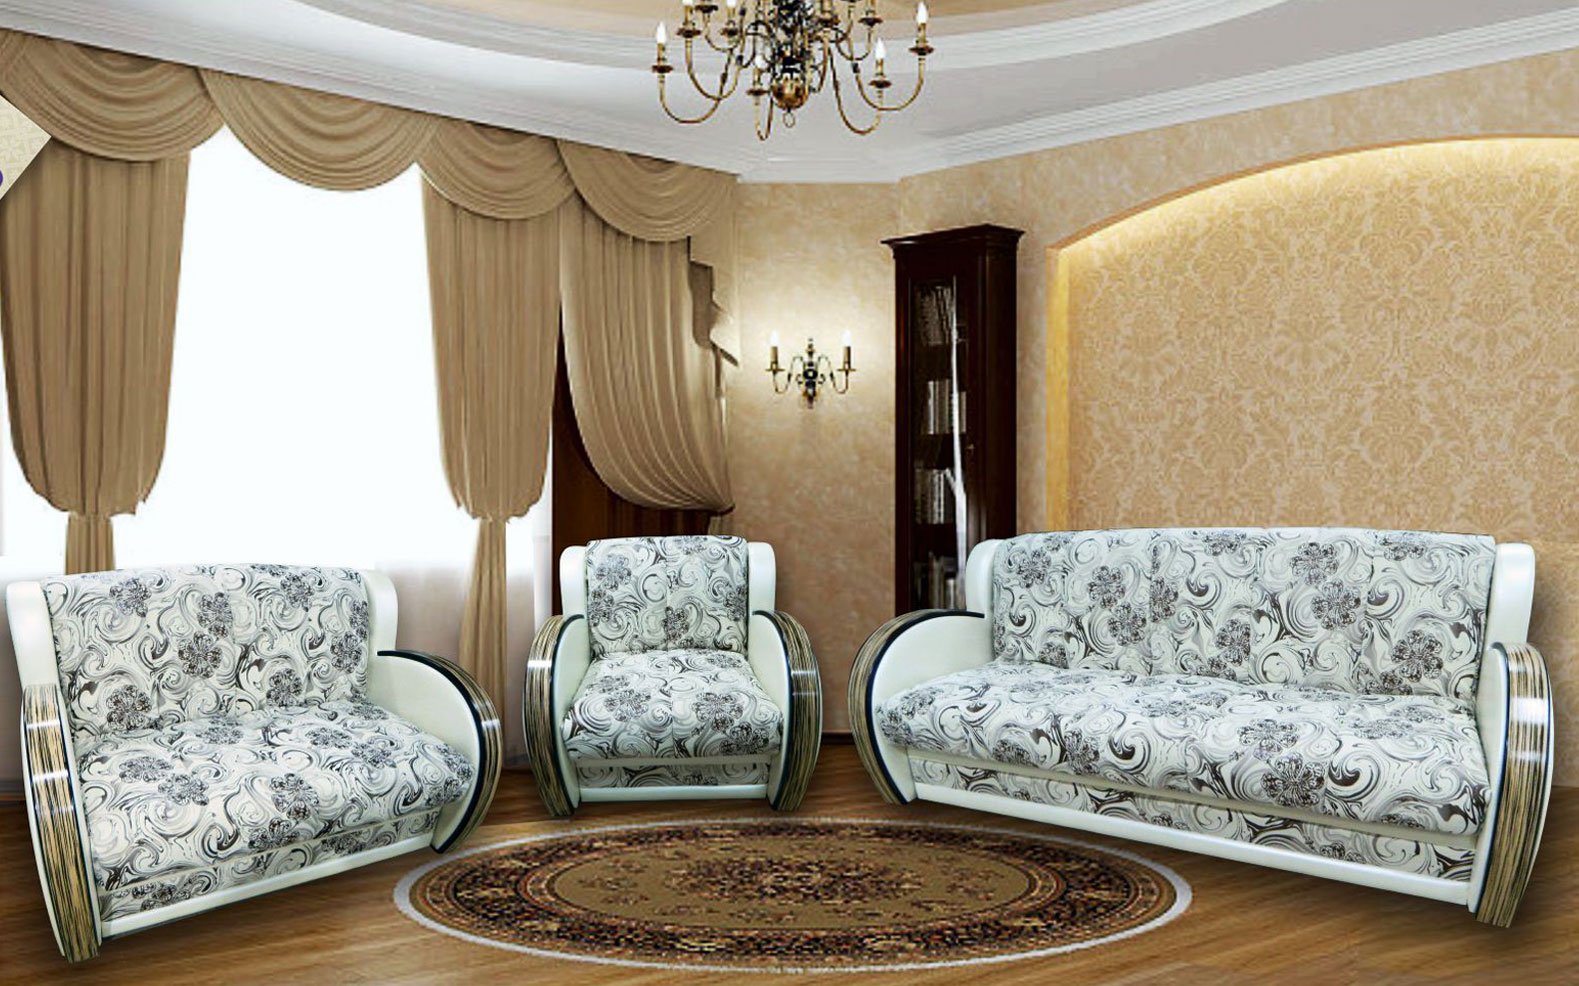 Комплект мебели для гостиной диван и кресло